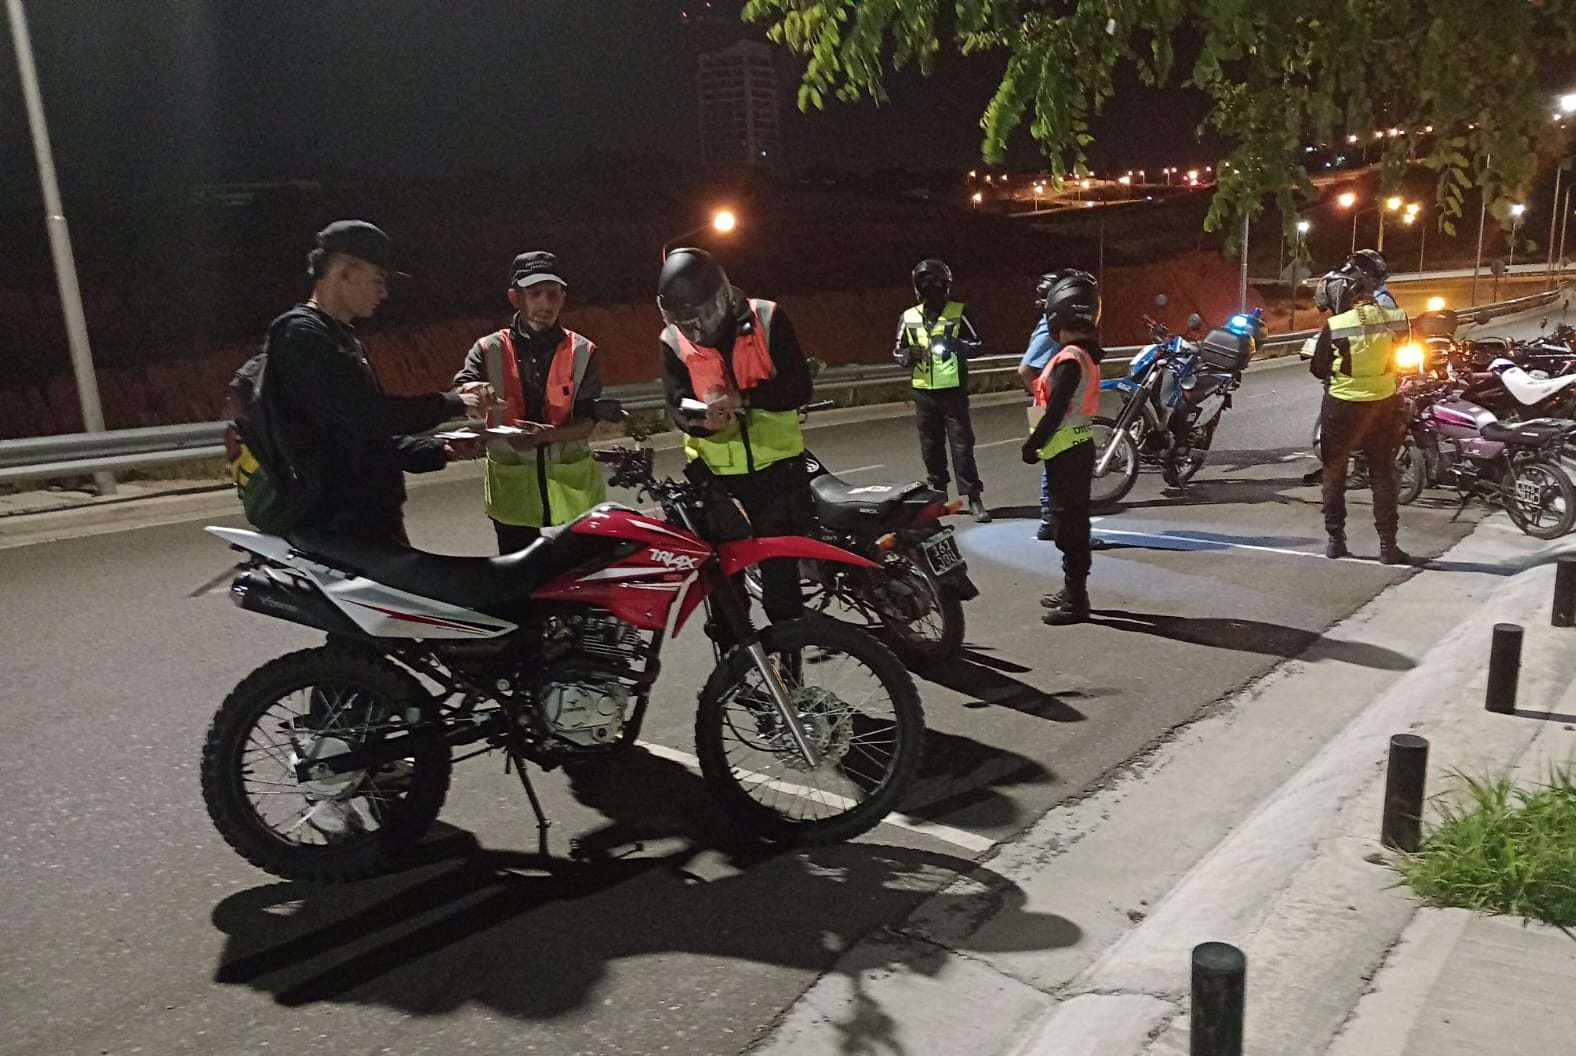 Inspectores evitaron que motociclistas corrieran picadas y fueron agredidos thumbnail